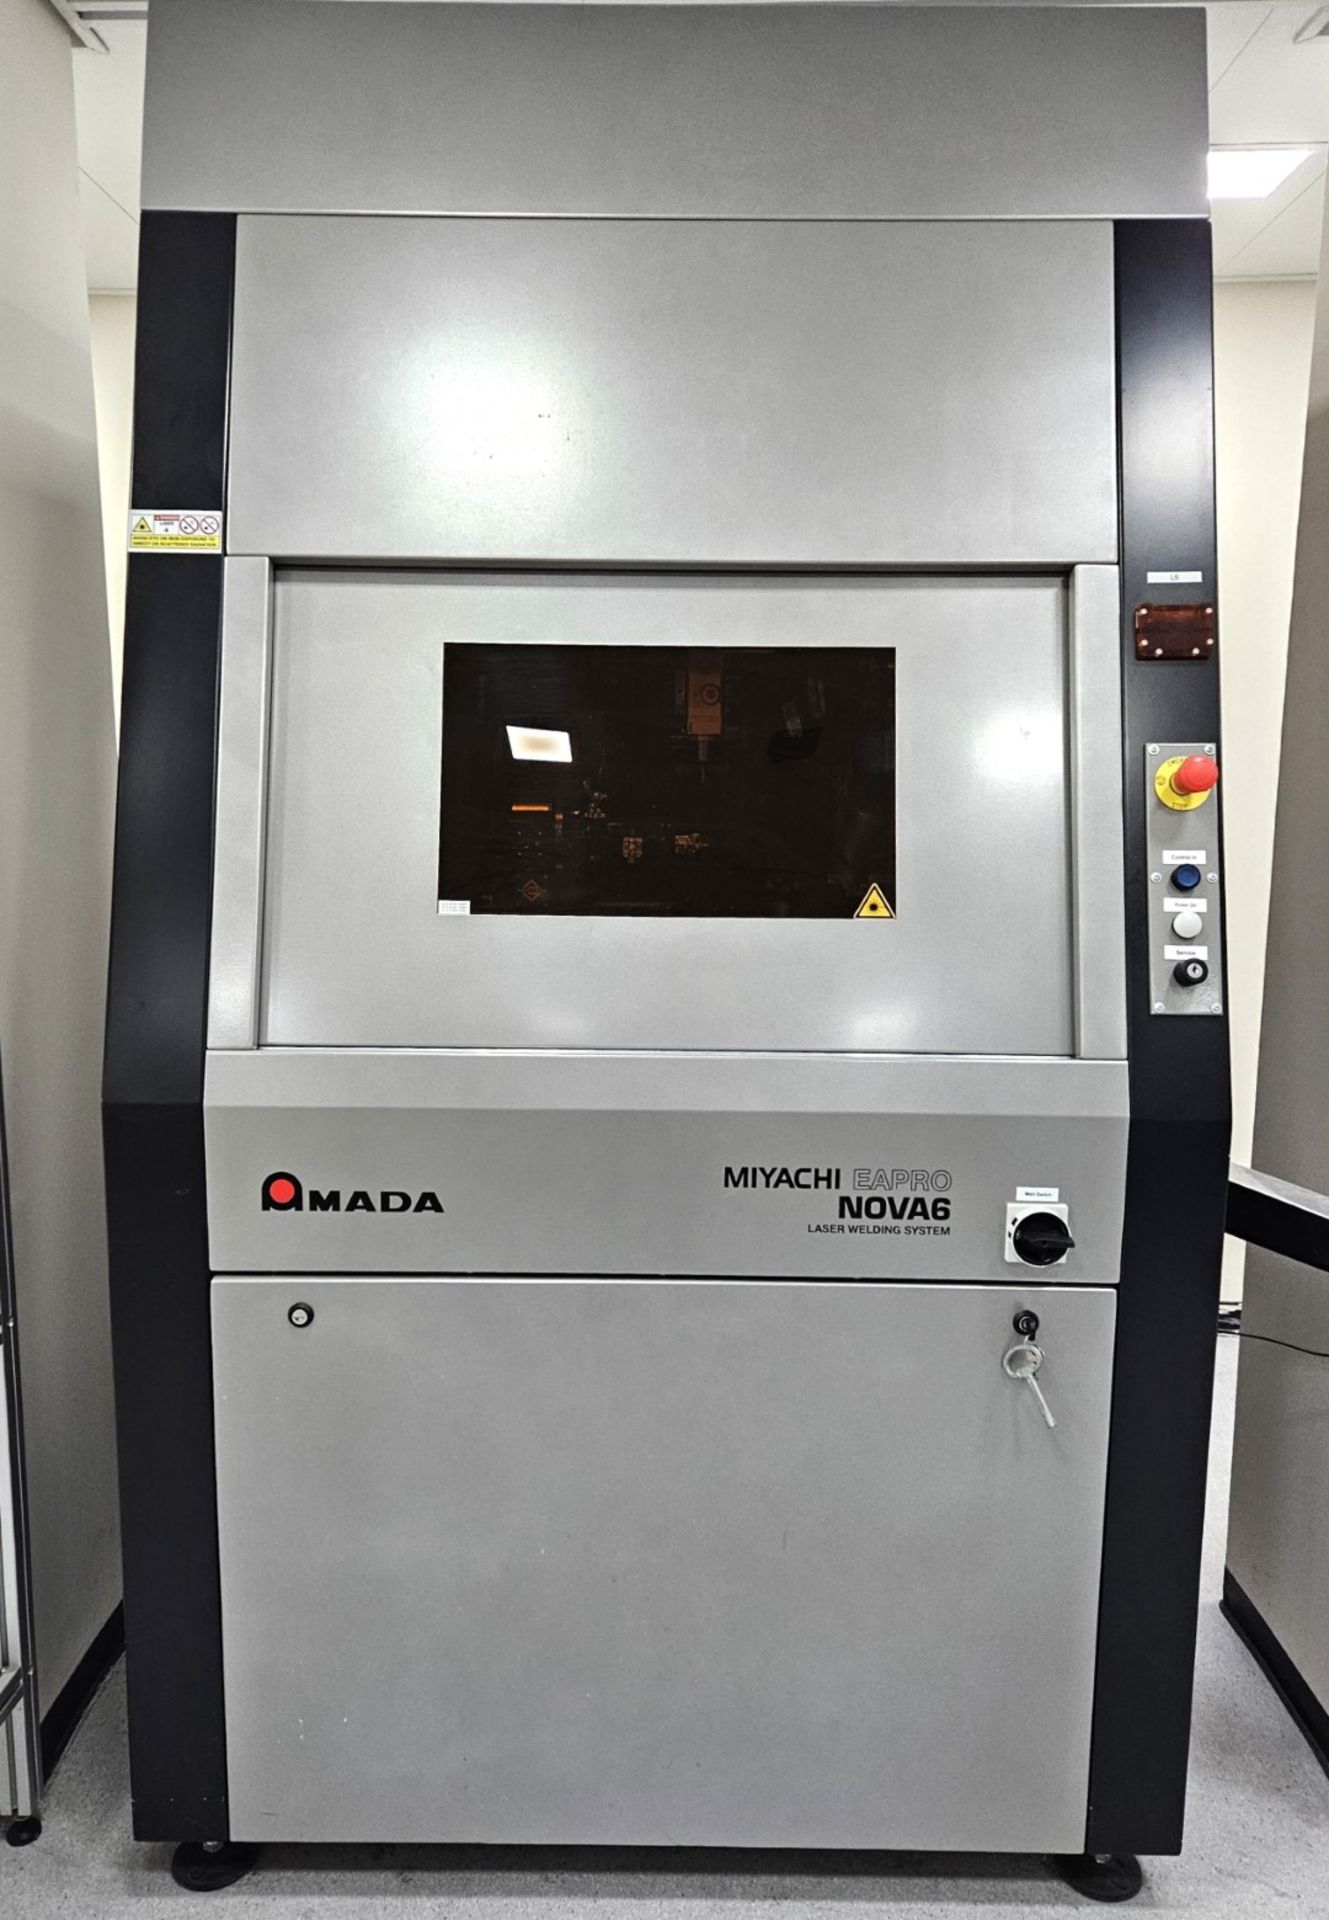 1 x Amada Miyachi Nova 6 Laser CNC Welding Workstation System - Type: 68M0098 - Year: 2016 - Image 2 of 20